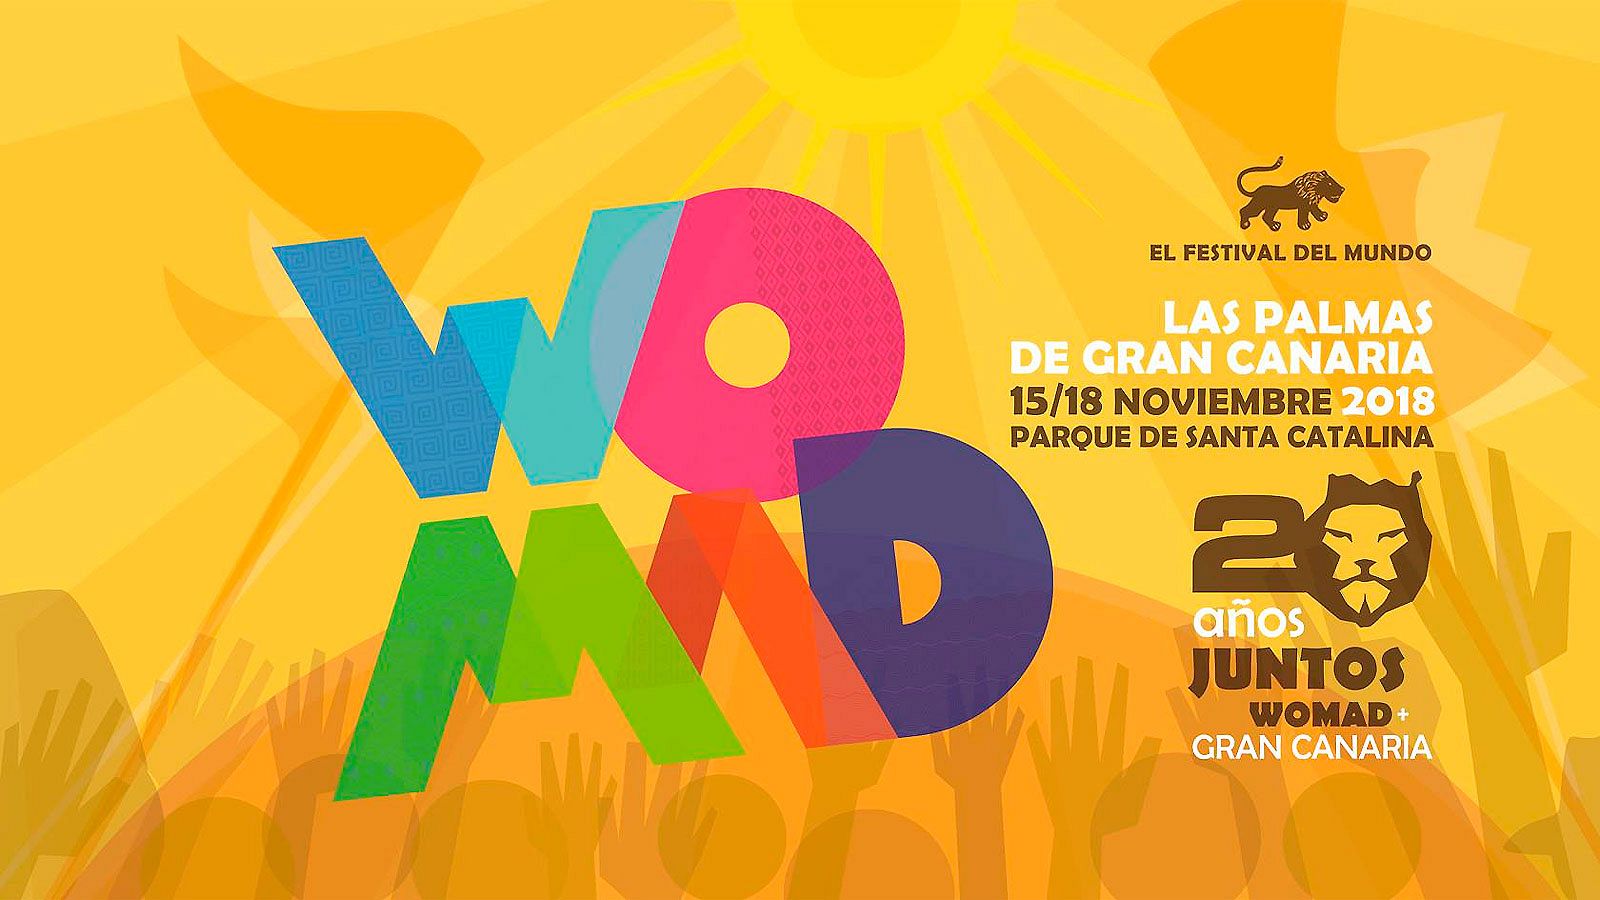 Descubre los sonidos del mundo del Festival WOMAD de Las Palmas de Gran Canaria con Radio 3